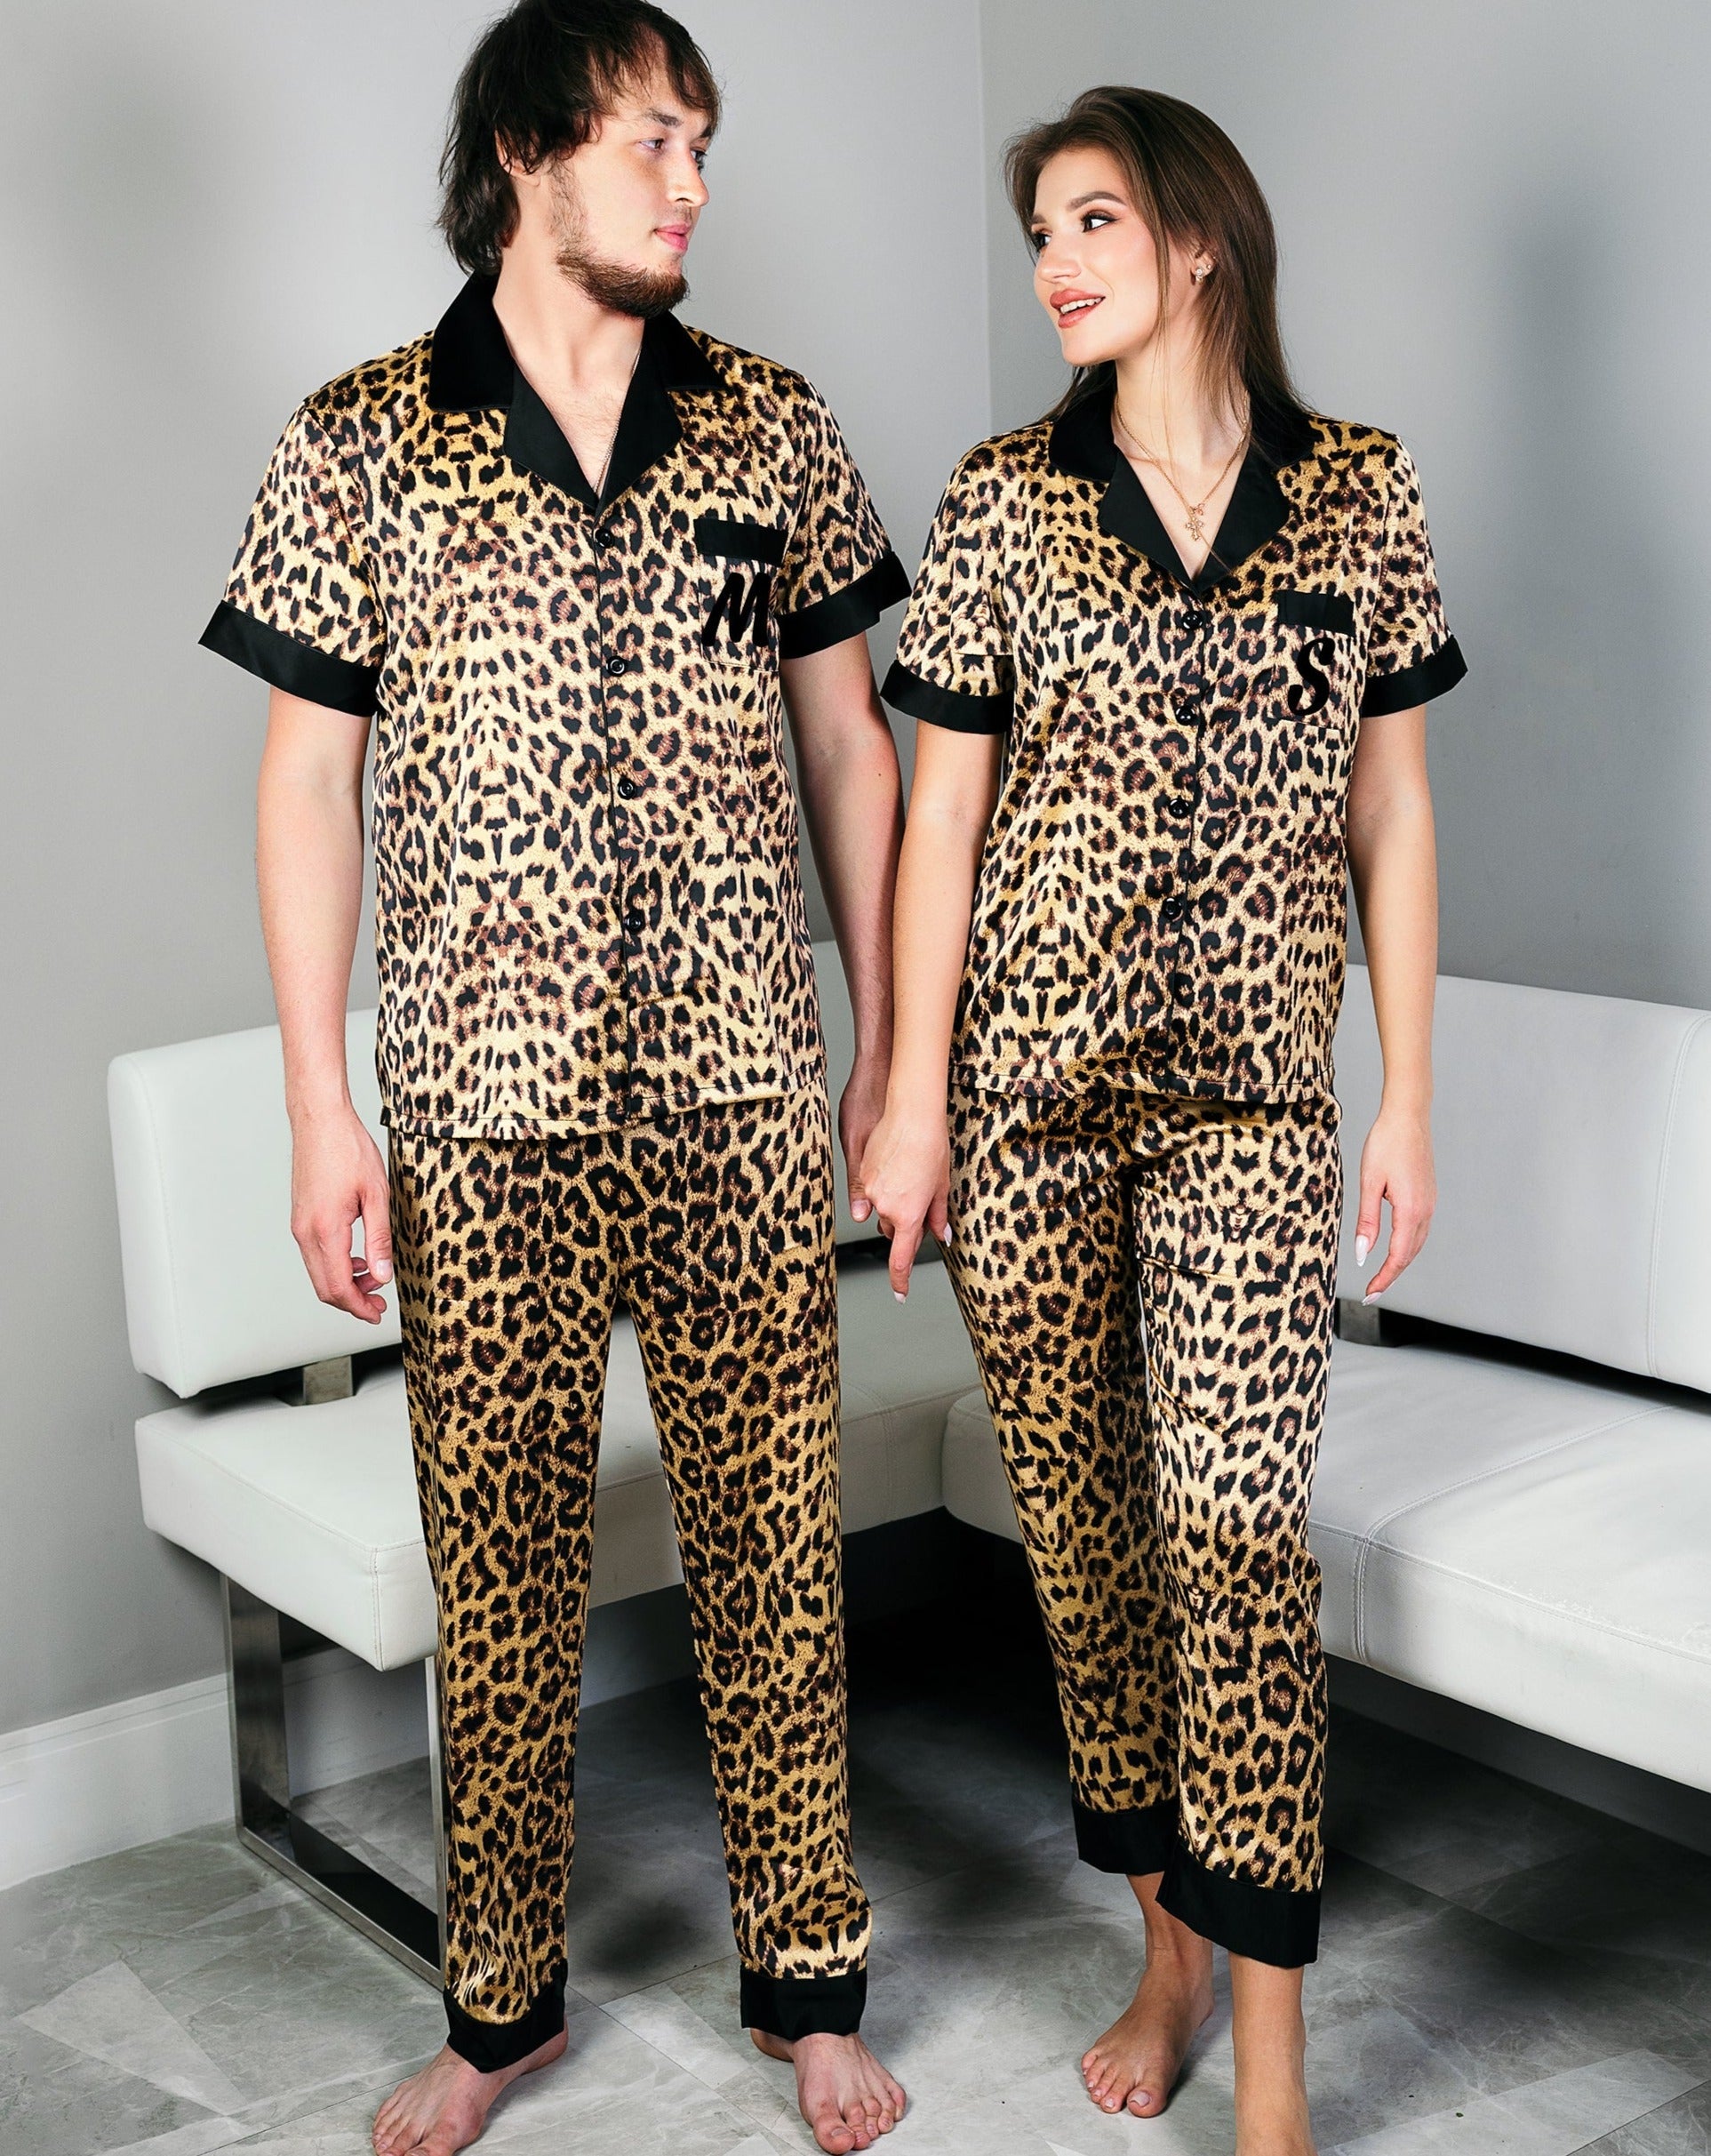 – Wedding Pajamas Gifts Gift, Leopard Honeymoon Sunny Miami Pajamas Anniversary Pajamas Custom Satin Xmas for gift Set Boutique Pjs, Couple,